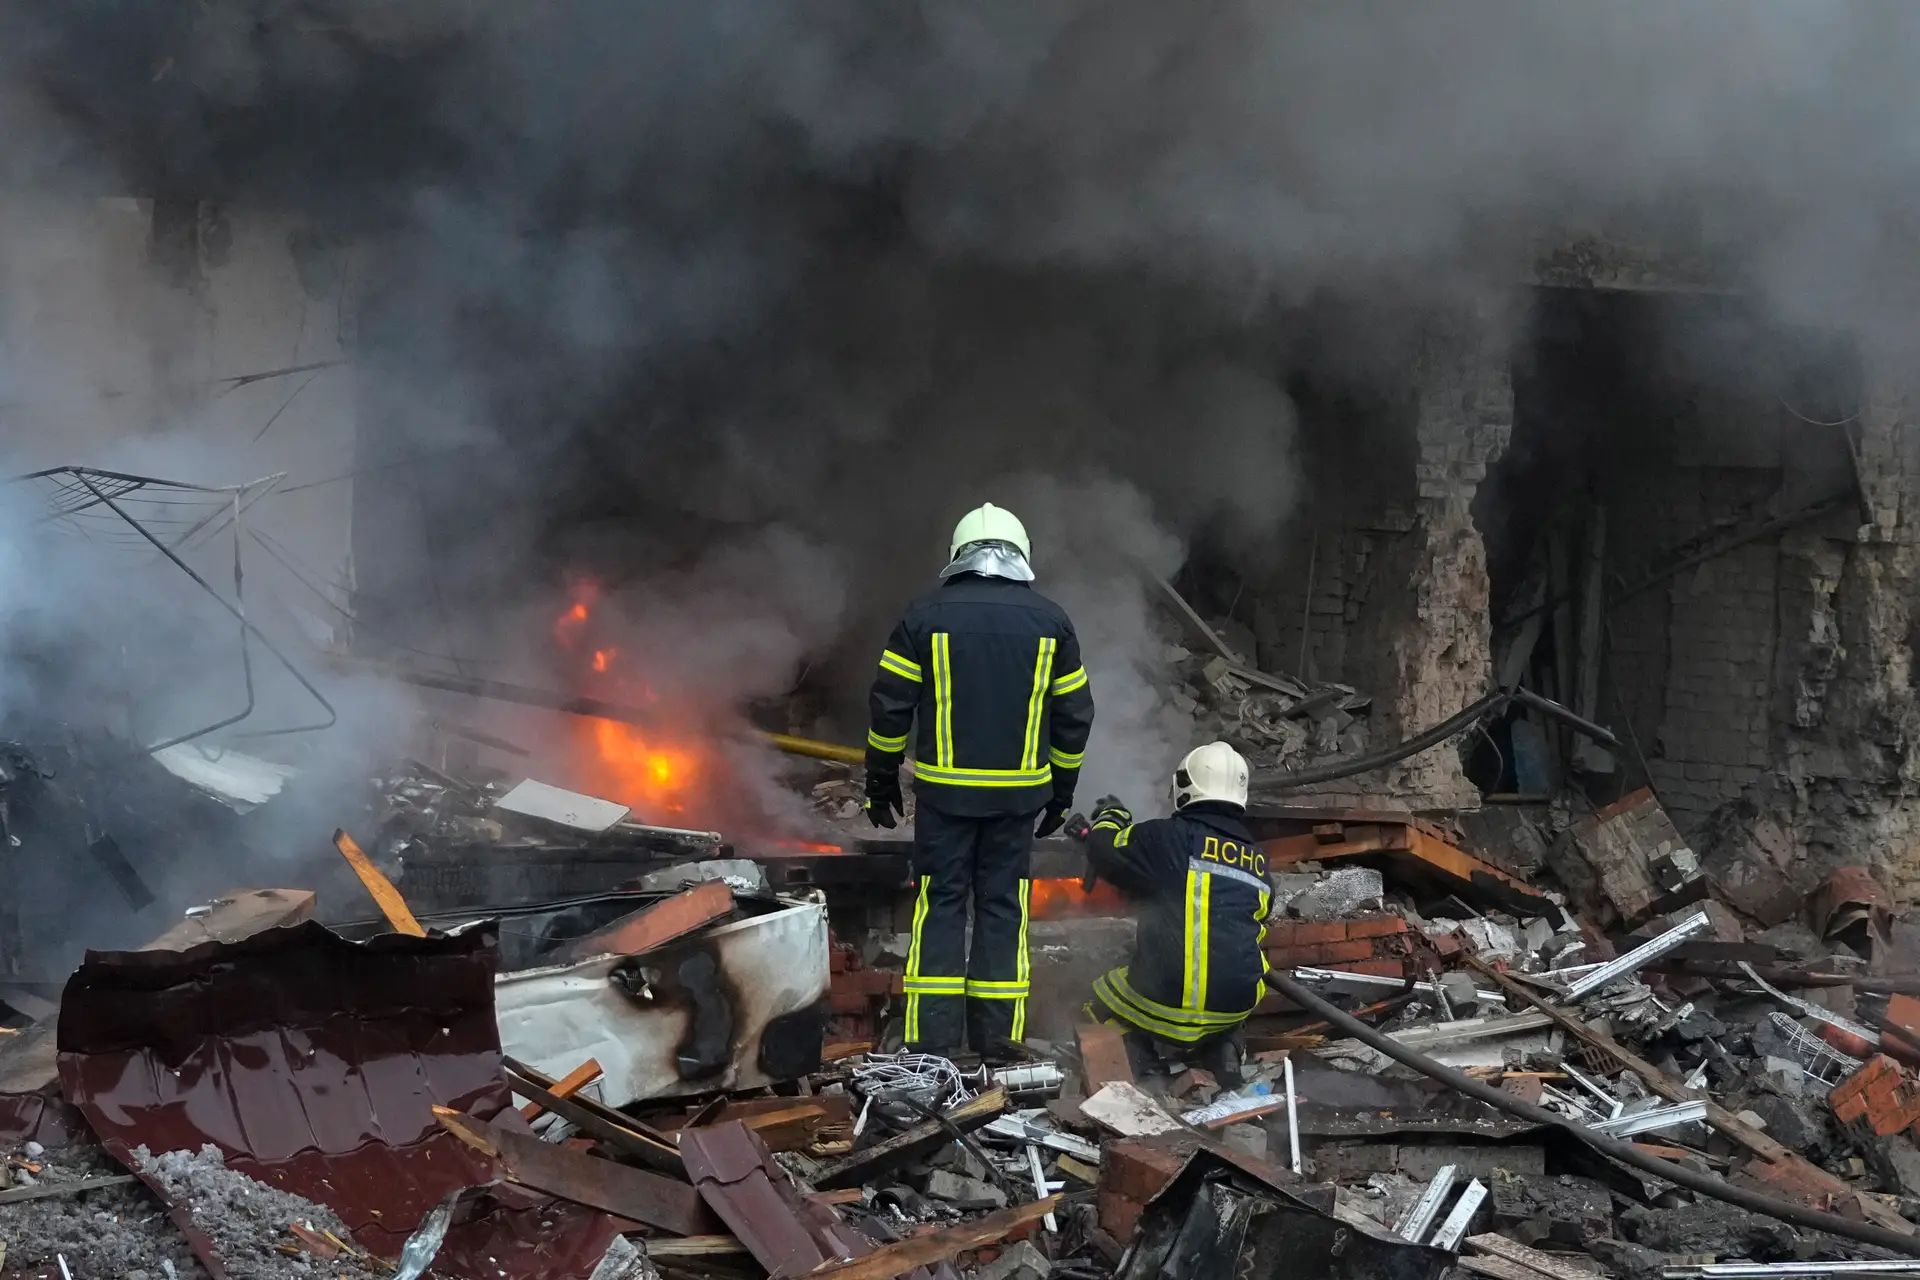 Três pessoas morreram e seis ficaram feridas num ataque em Kiev